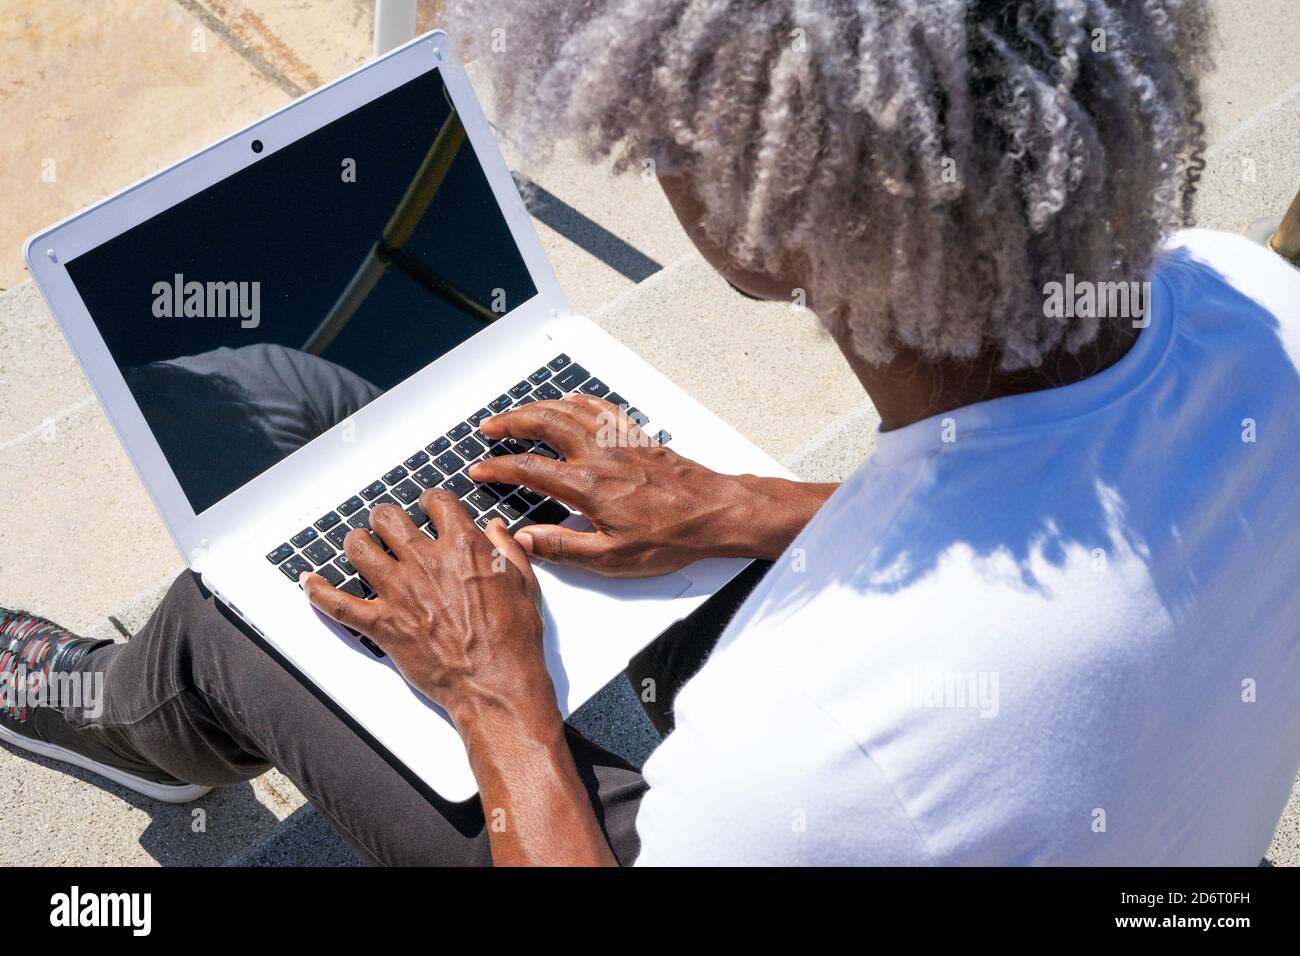 Vue de dessus d'un homme noir travaillant sur un ordinateur portable blanc. Concept de recherche de travail et de travail à l'extérieur. Banque D'Images